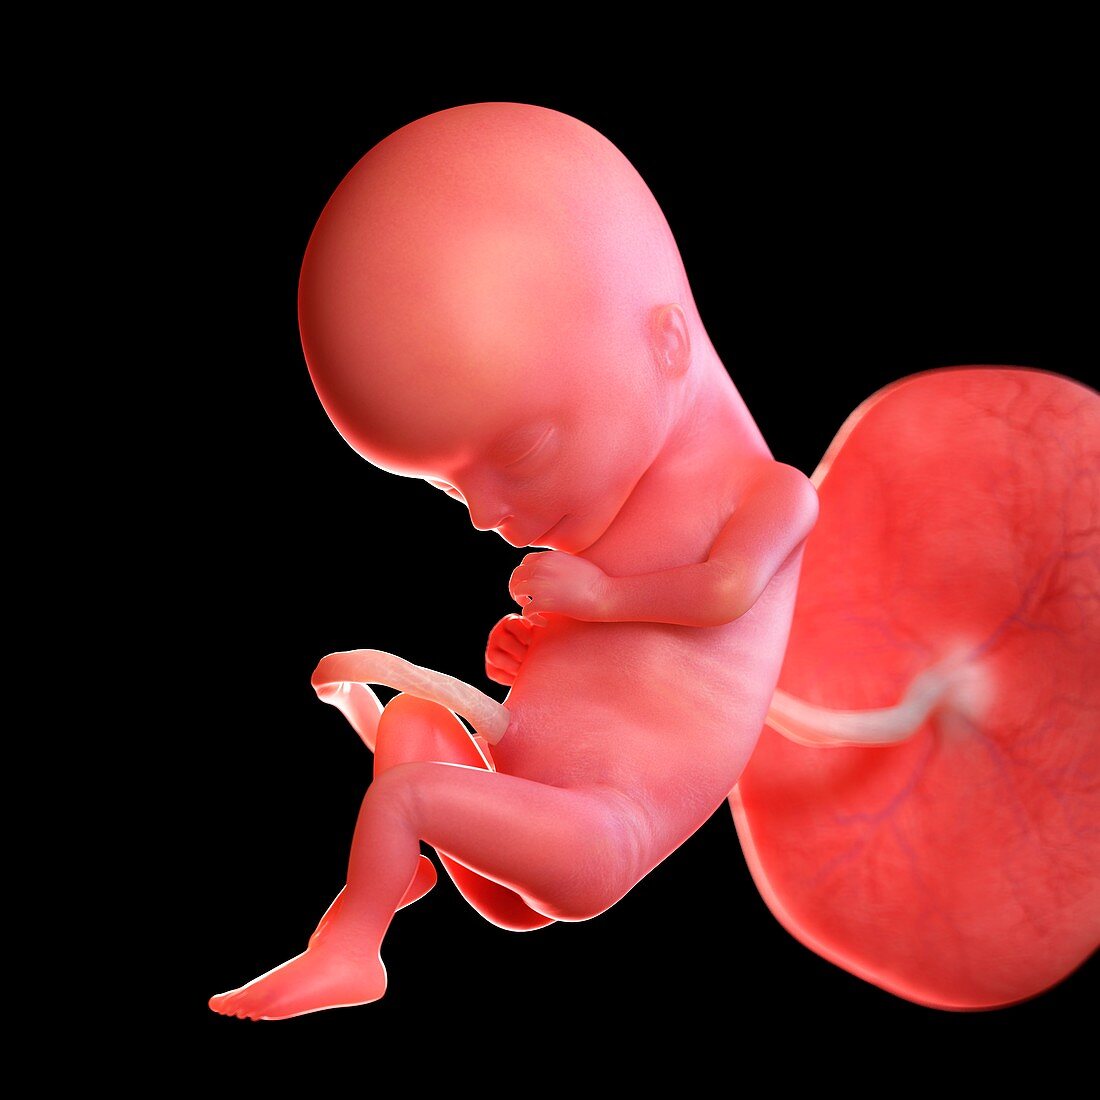 Human foetus age 15 weeks, illustration